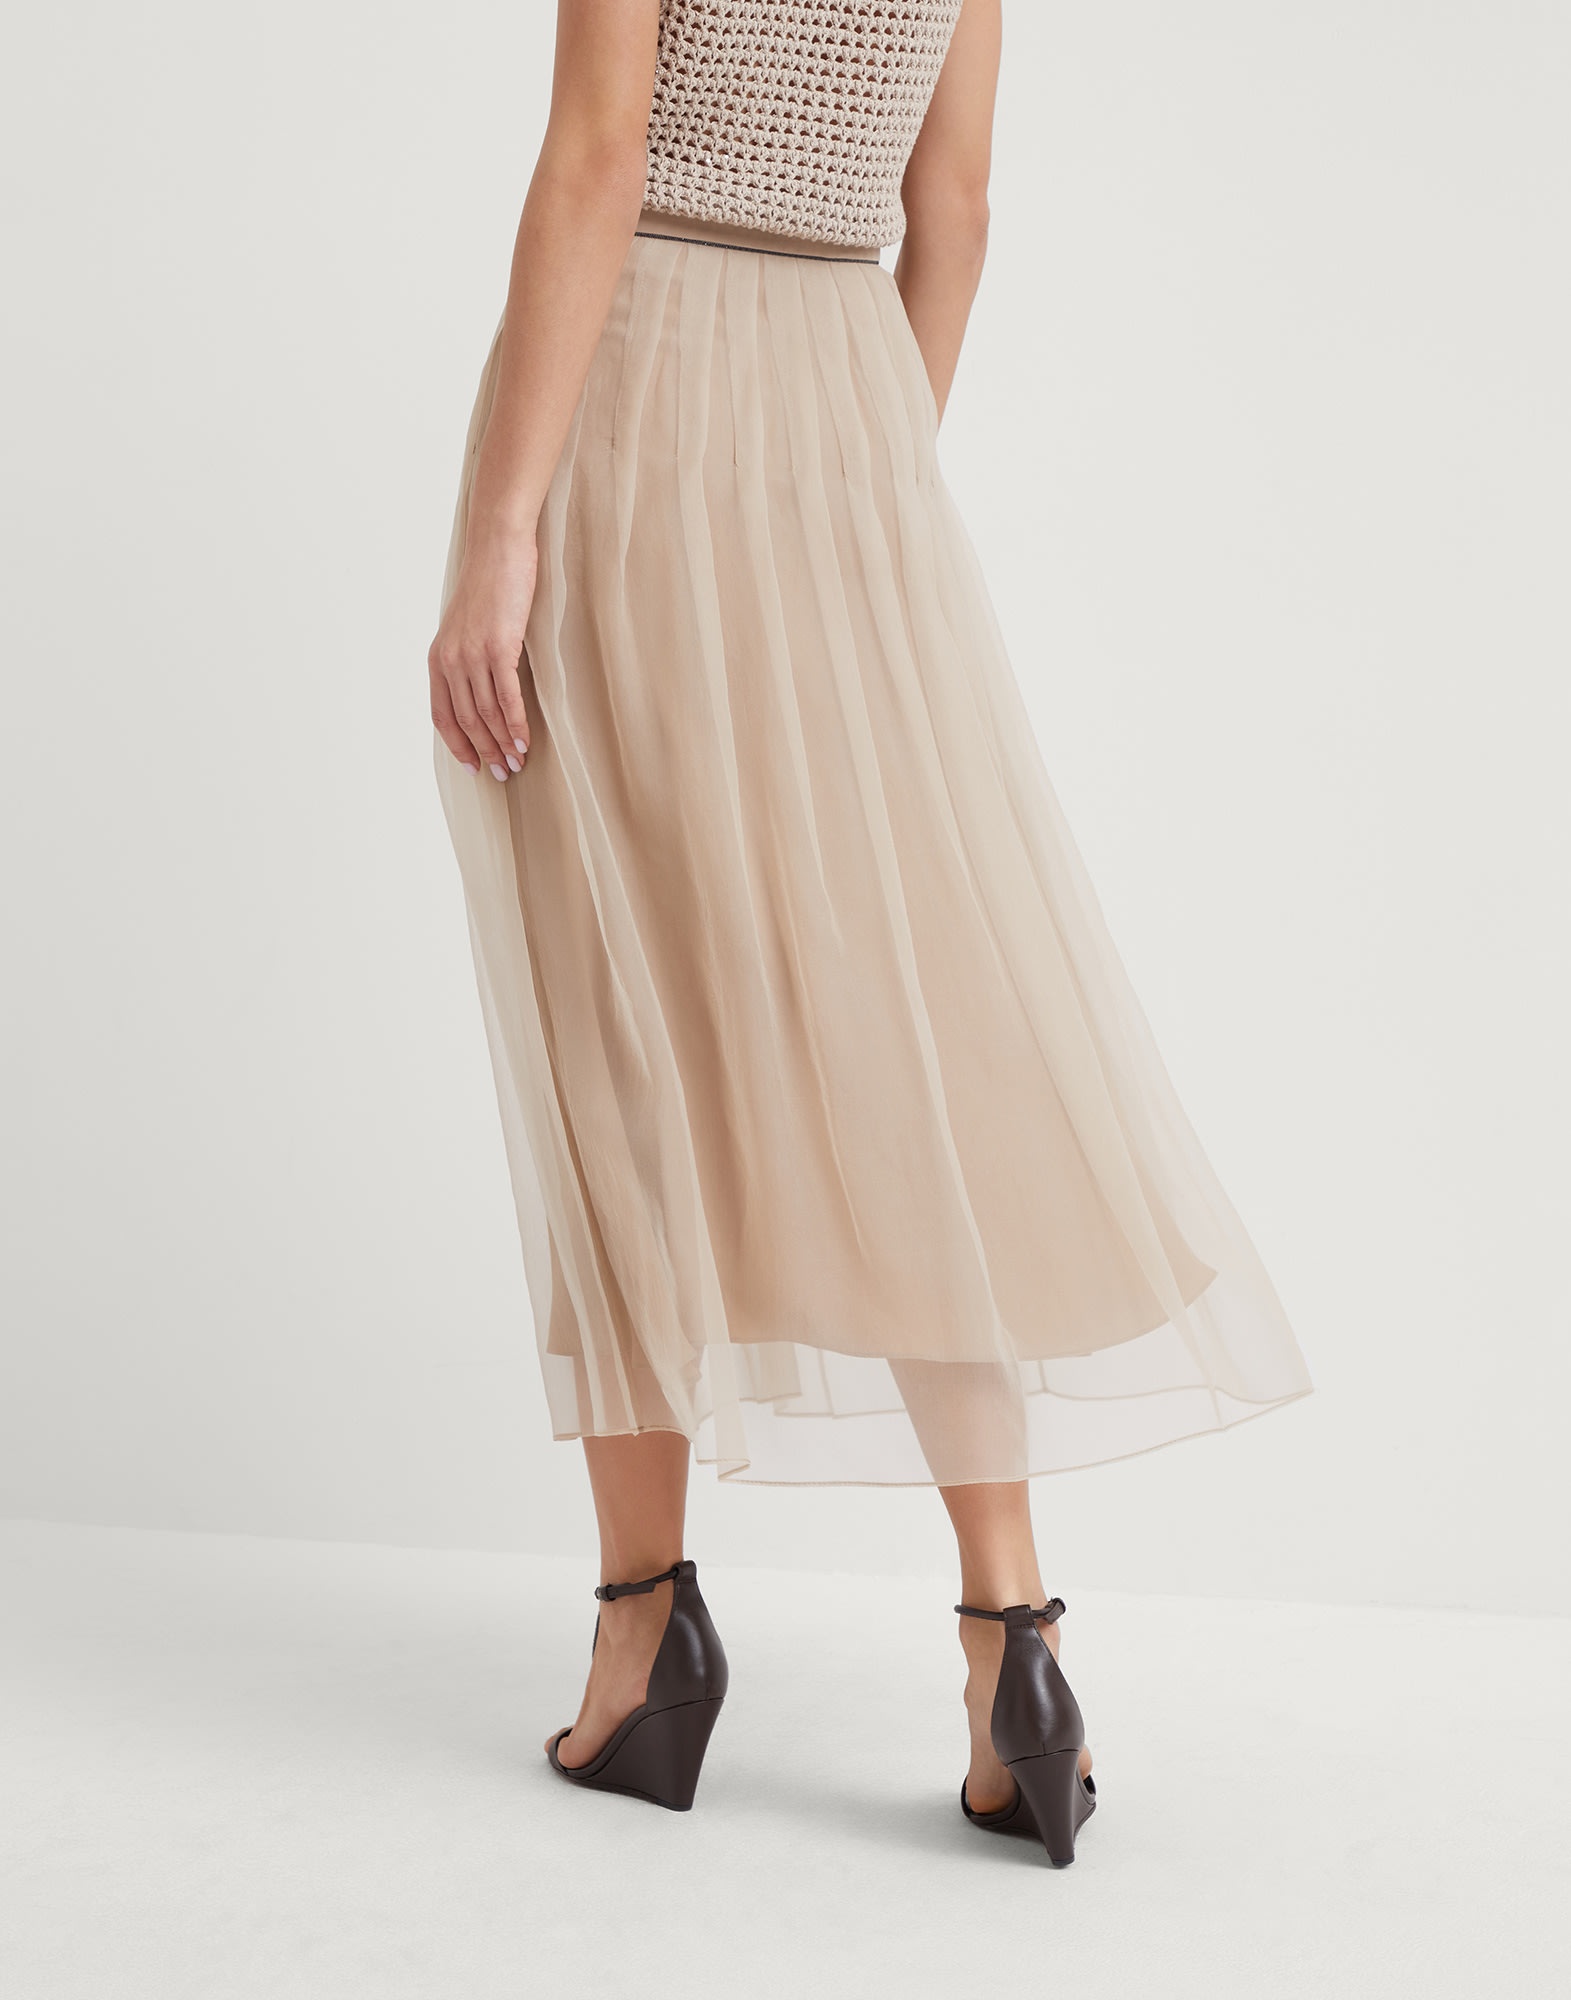 Crispy silk pleated midi skirt with shiny waistband - 2